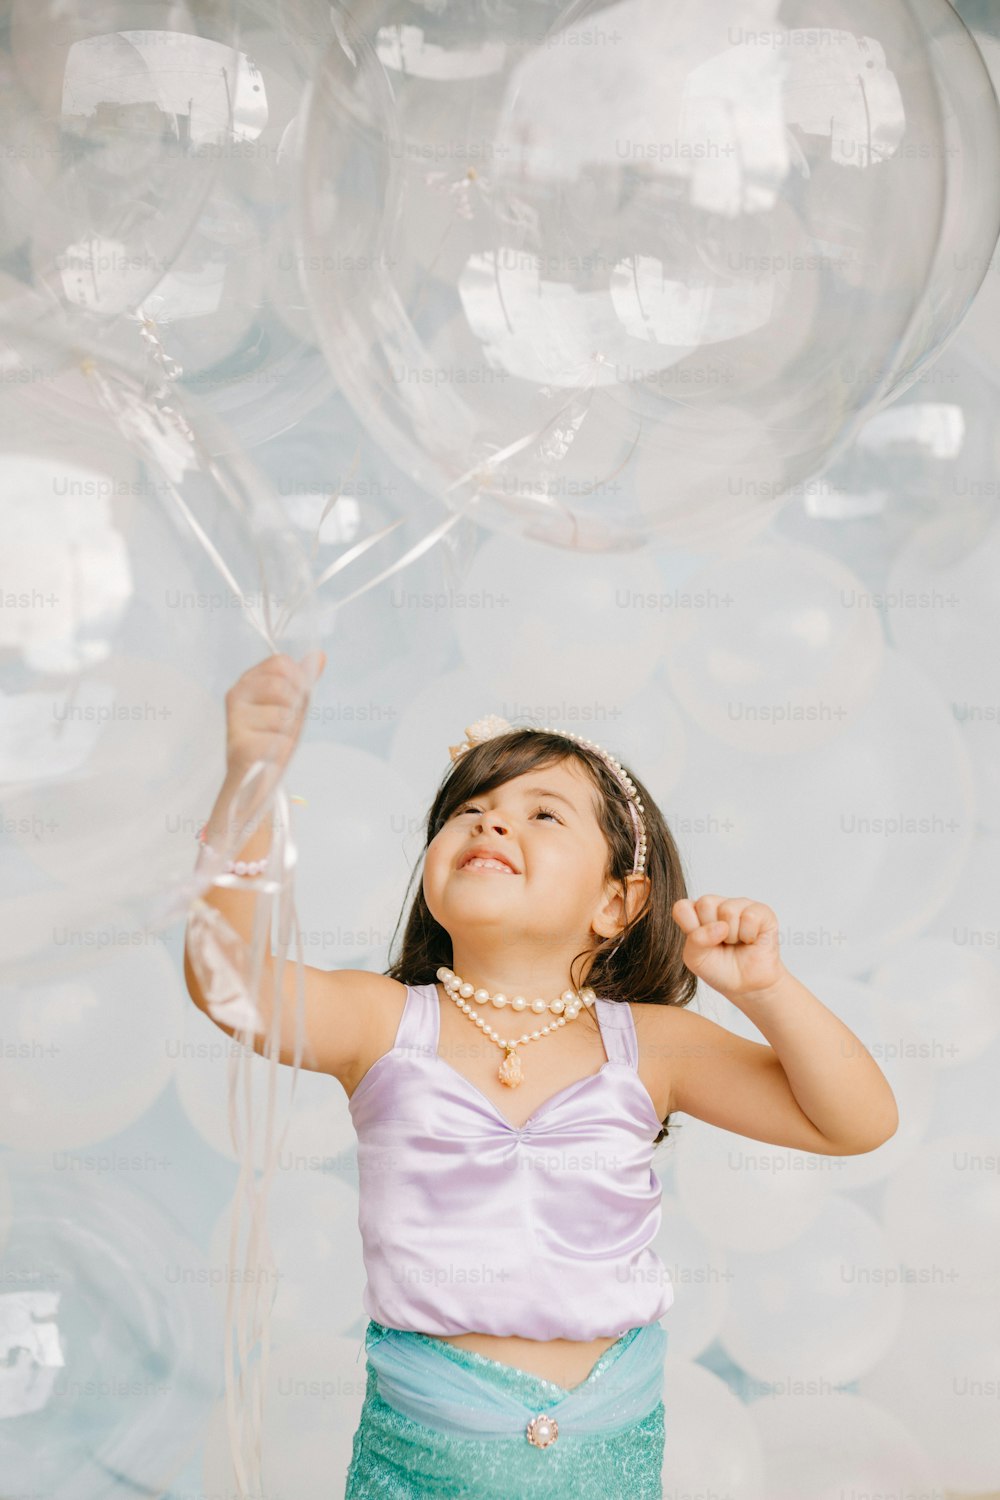 Ein kleines Mädchen, das einen Haufen durchsichtiger Luftballons hält